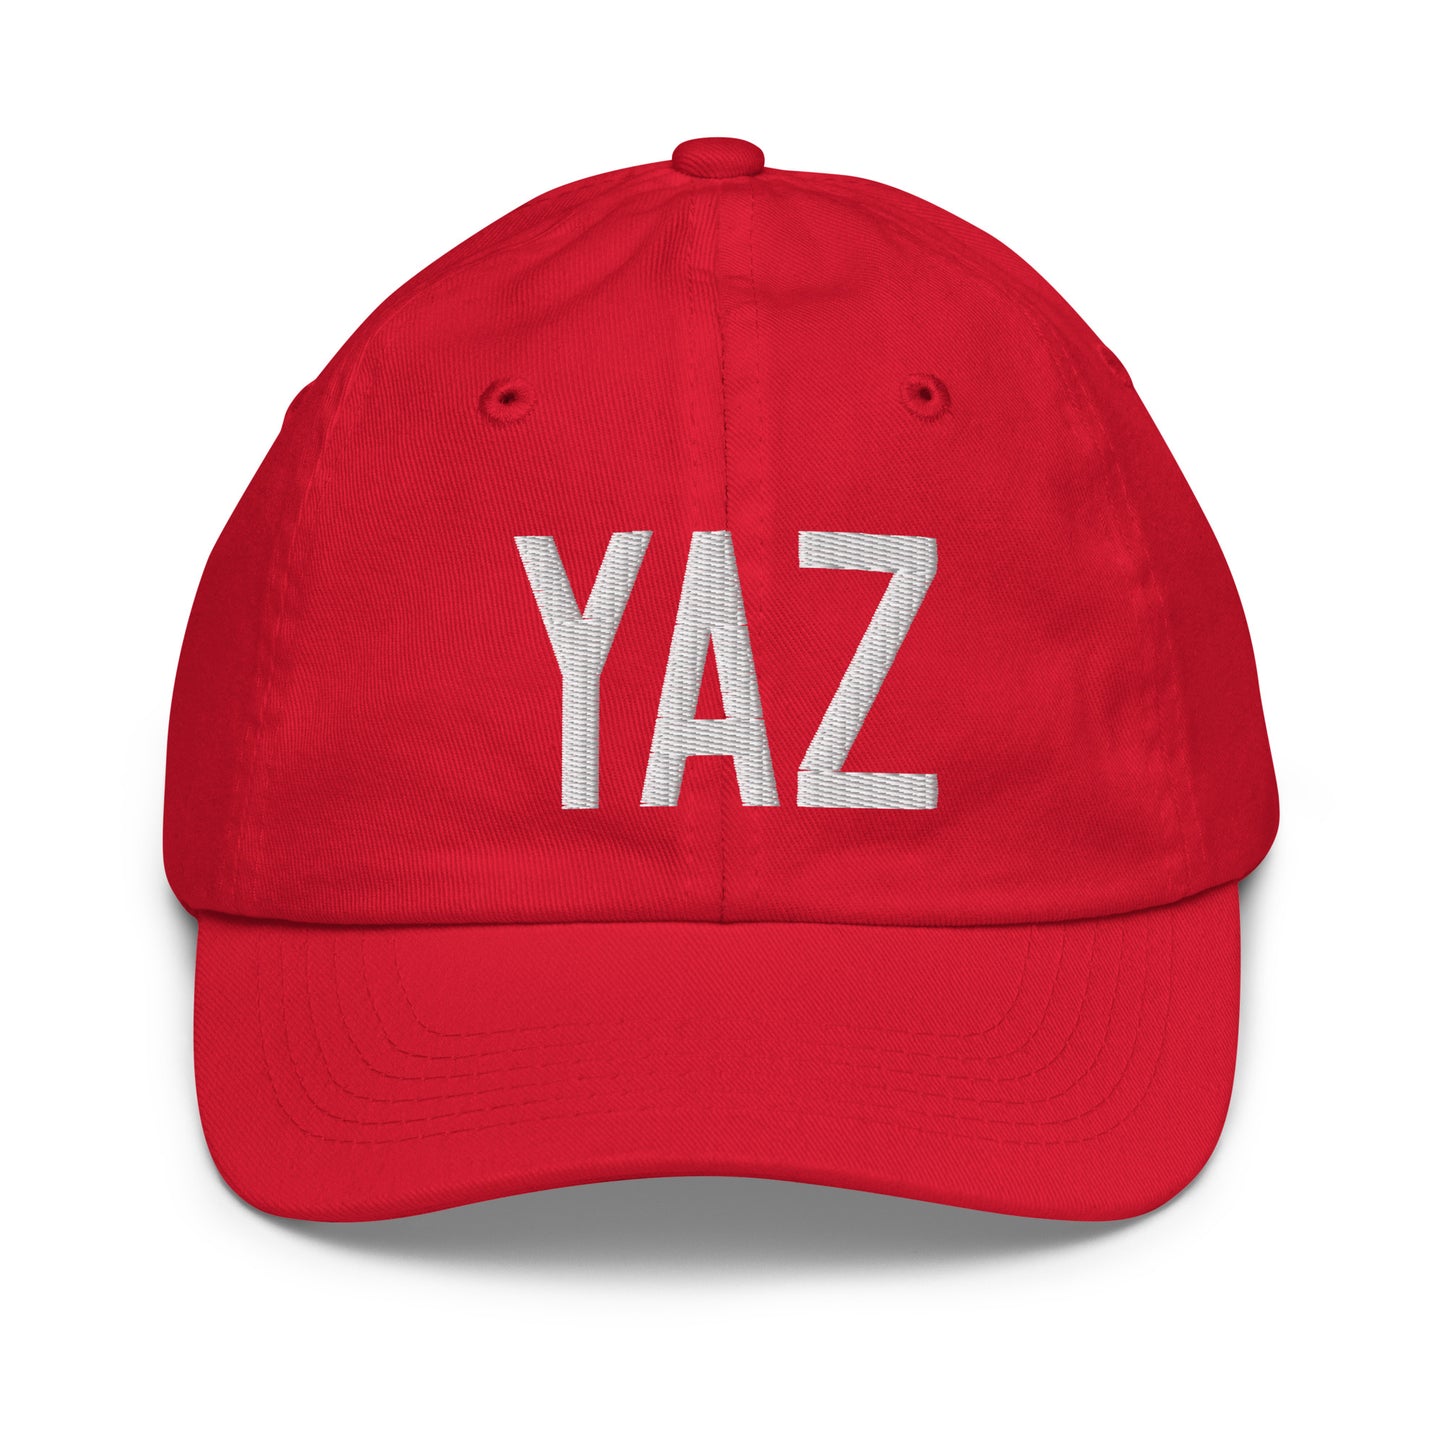 Airport Code Kid's Baseball Cap - White • YAZ Tofino • YHM Designs - Image 17